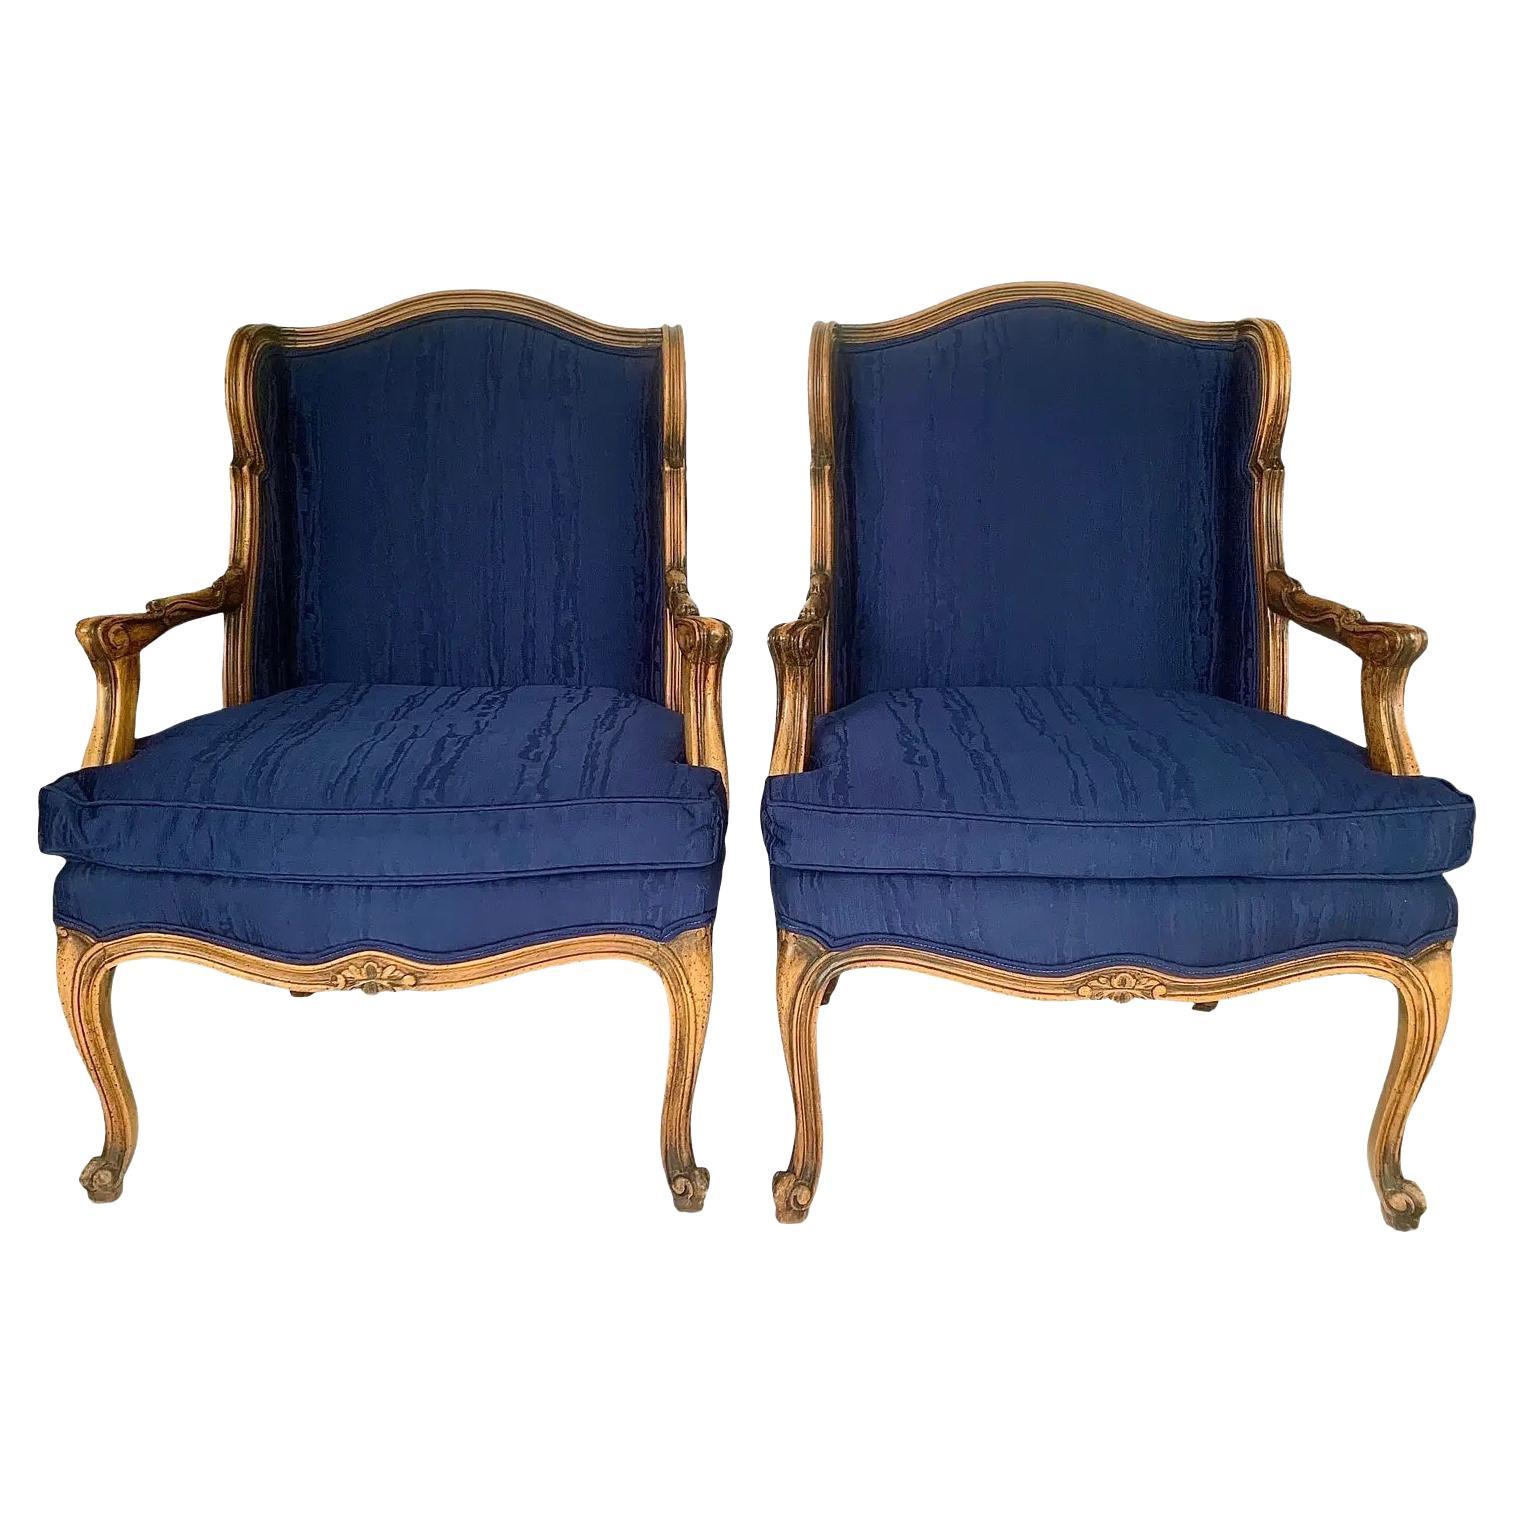 Paire de chaises longues en noyer Louis XV de style provincial français